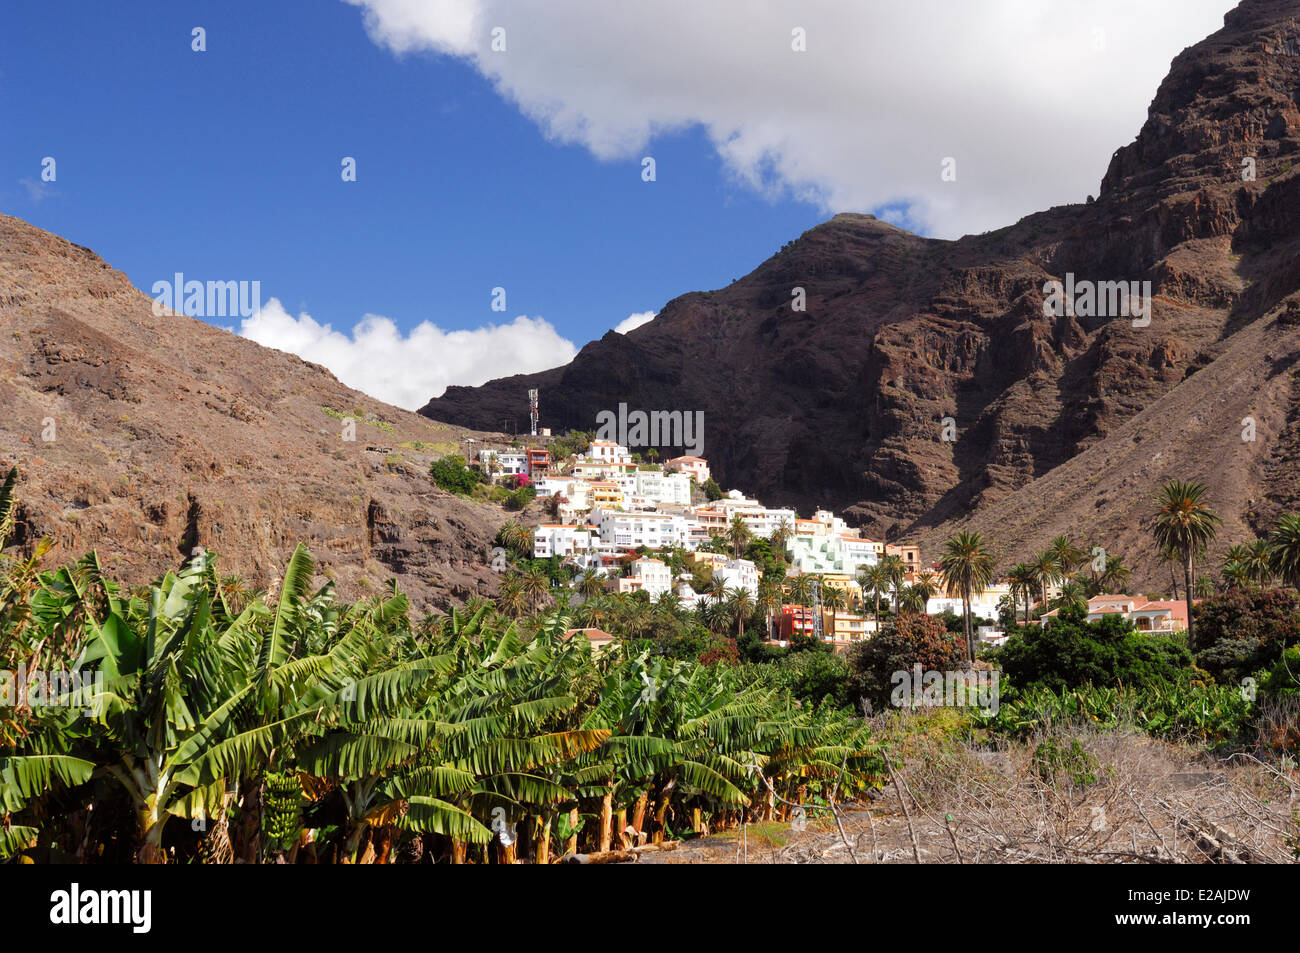 Spain, Canary Islands, La Gomera, Valle Gran Rey, white houses of the La Calera Village Stock Photo